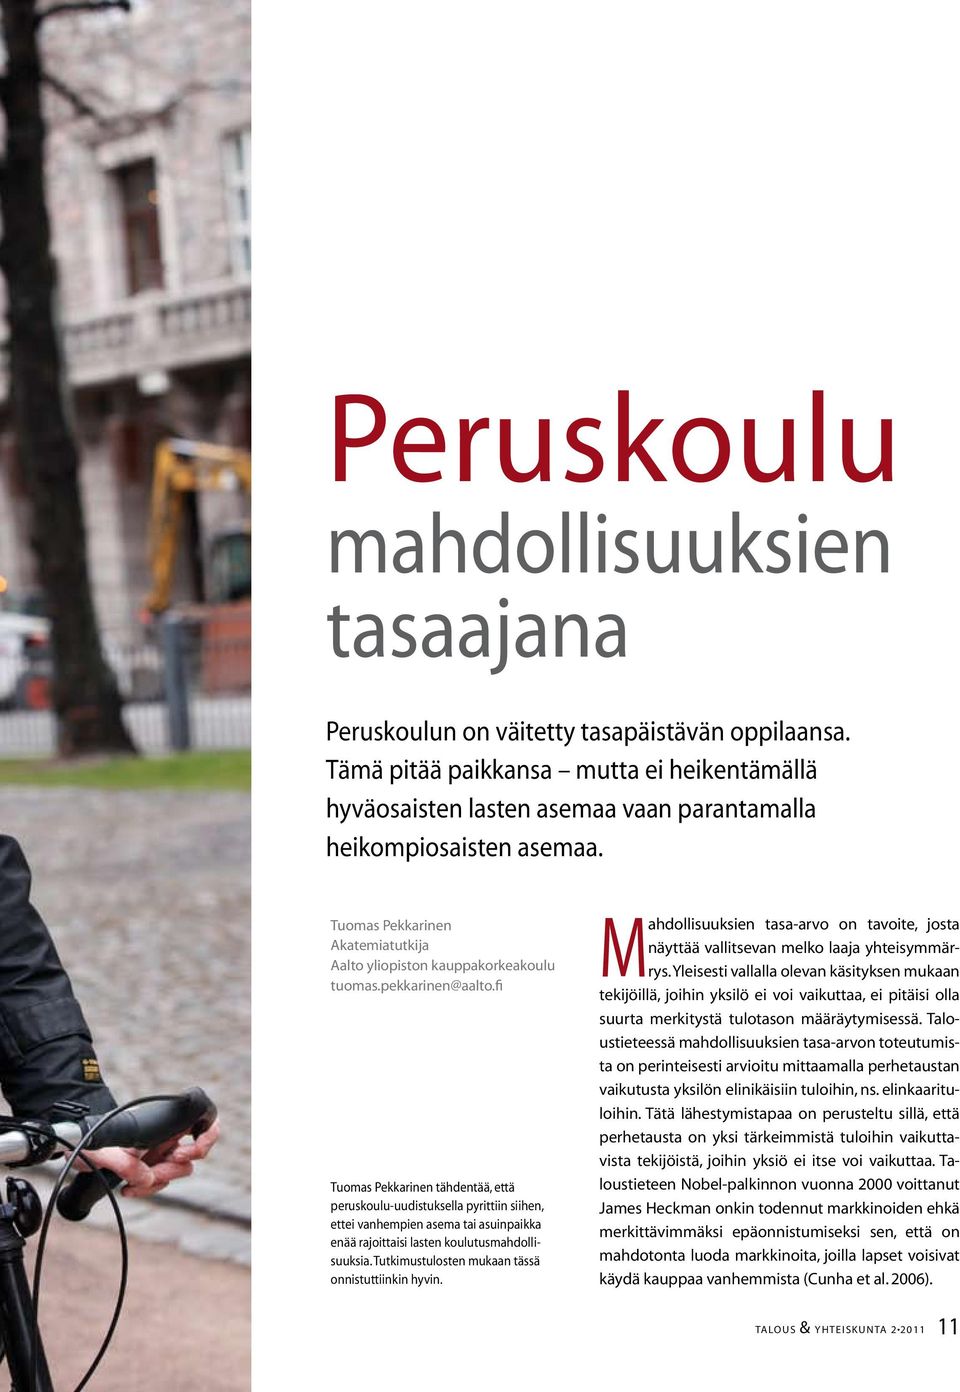 pekkarinen@aalto.fi Tuomas Pekkarinen tähdentää, että peruskoulu-uudistuksella pyrittiin siihen, ettei vanhempien asema tai asuinpaikka enää rajoittaisi lasten koulutusmahdollisuuksia.